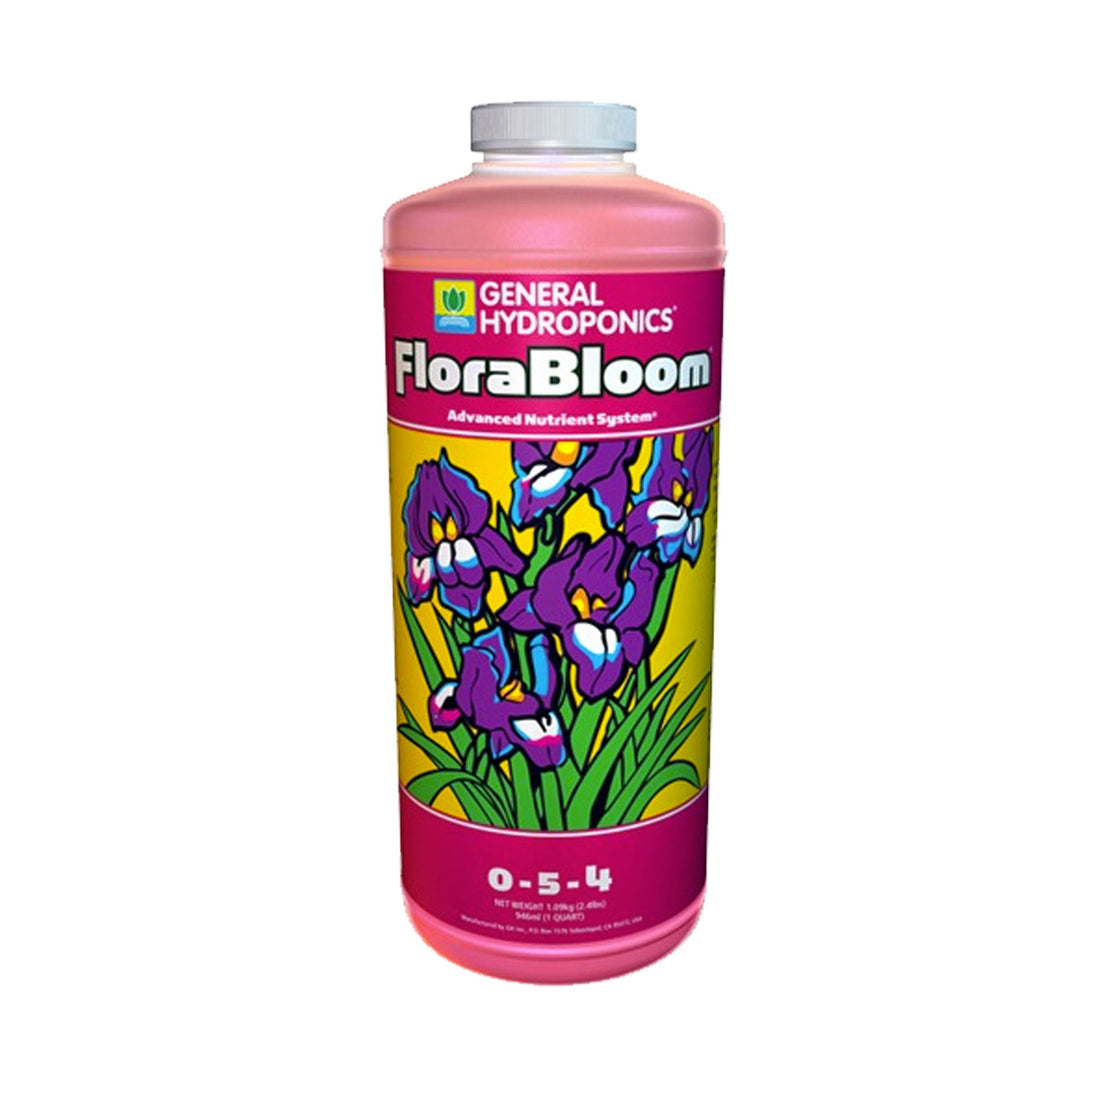 Flora Bloom, La nutrición base de General Hydroponics que te dará las mejores cosechas.